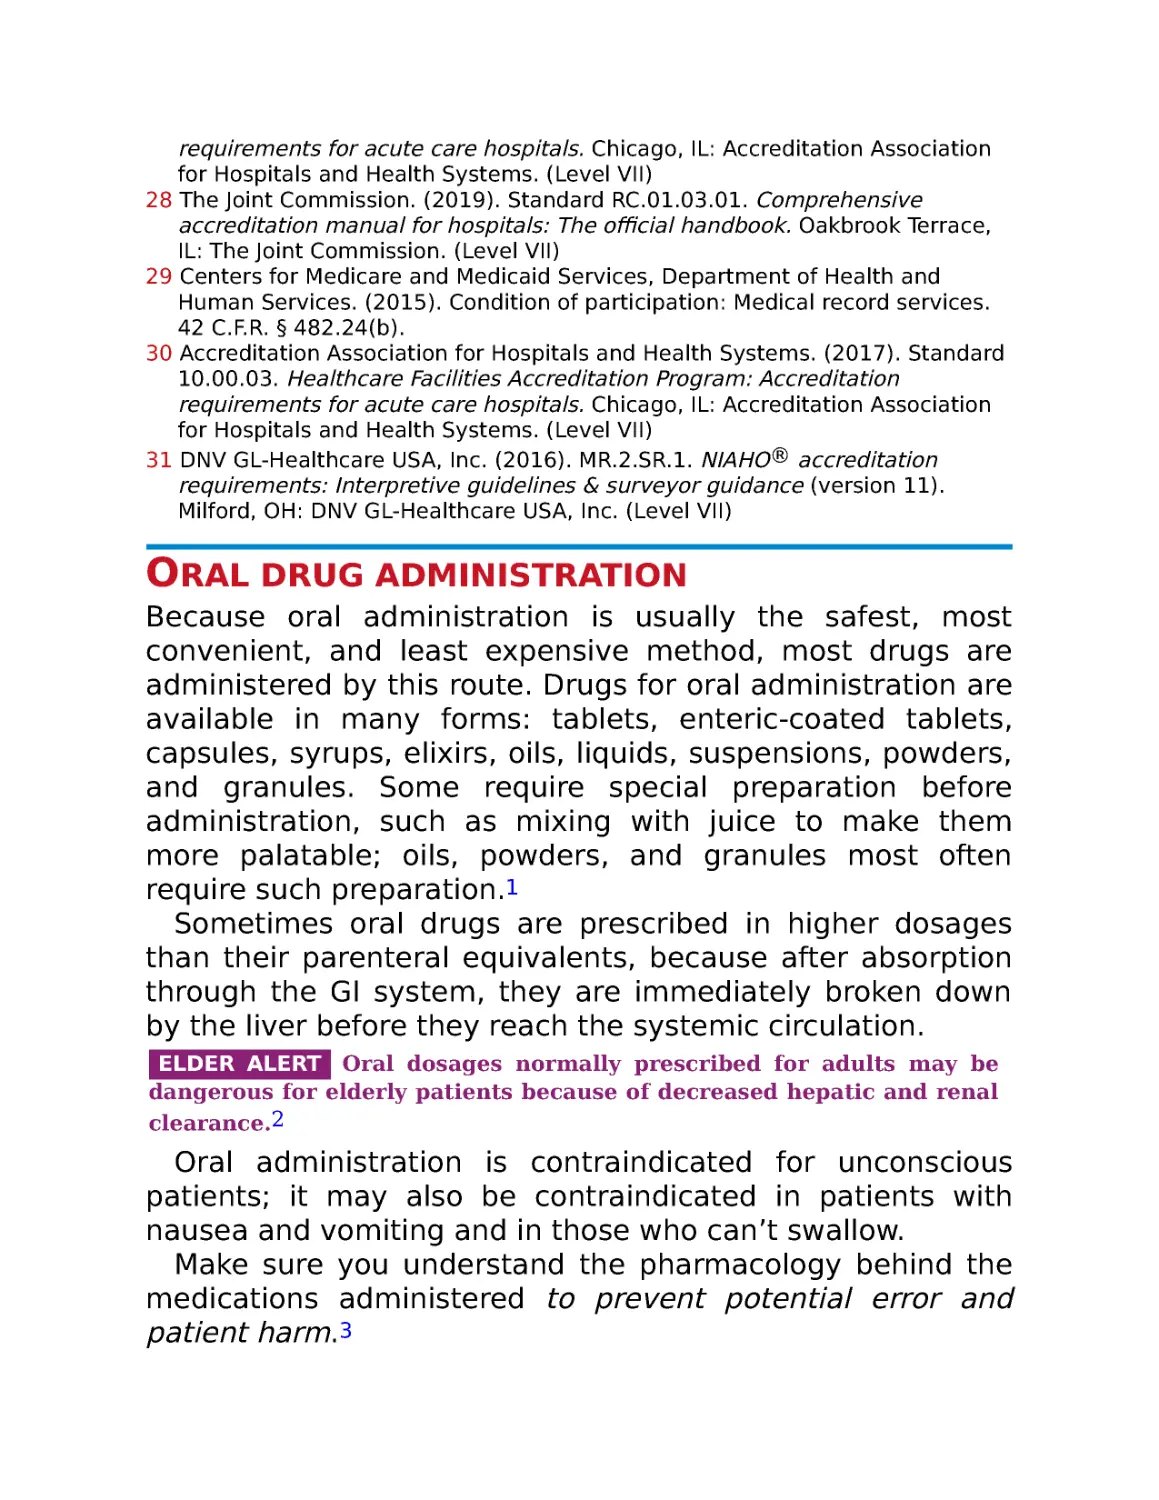 Oral drug administration